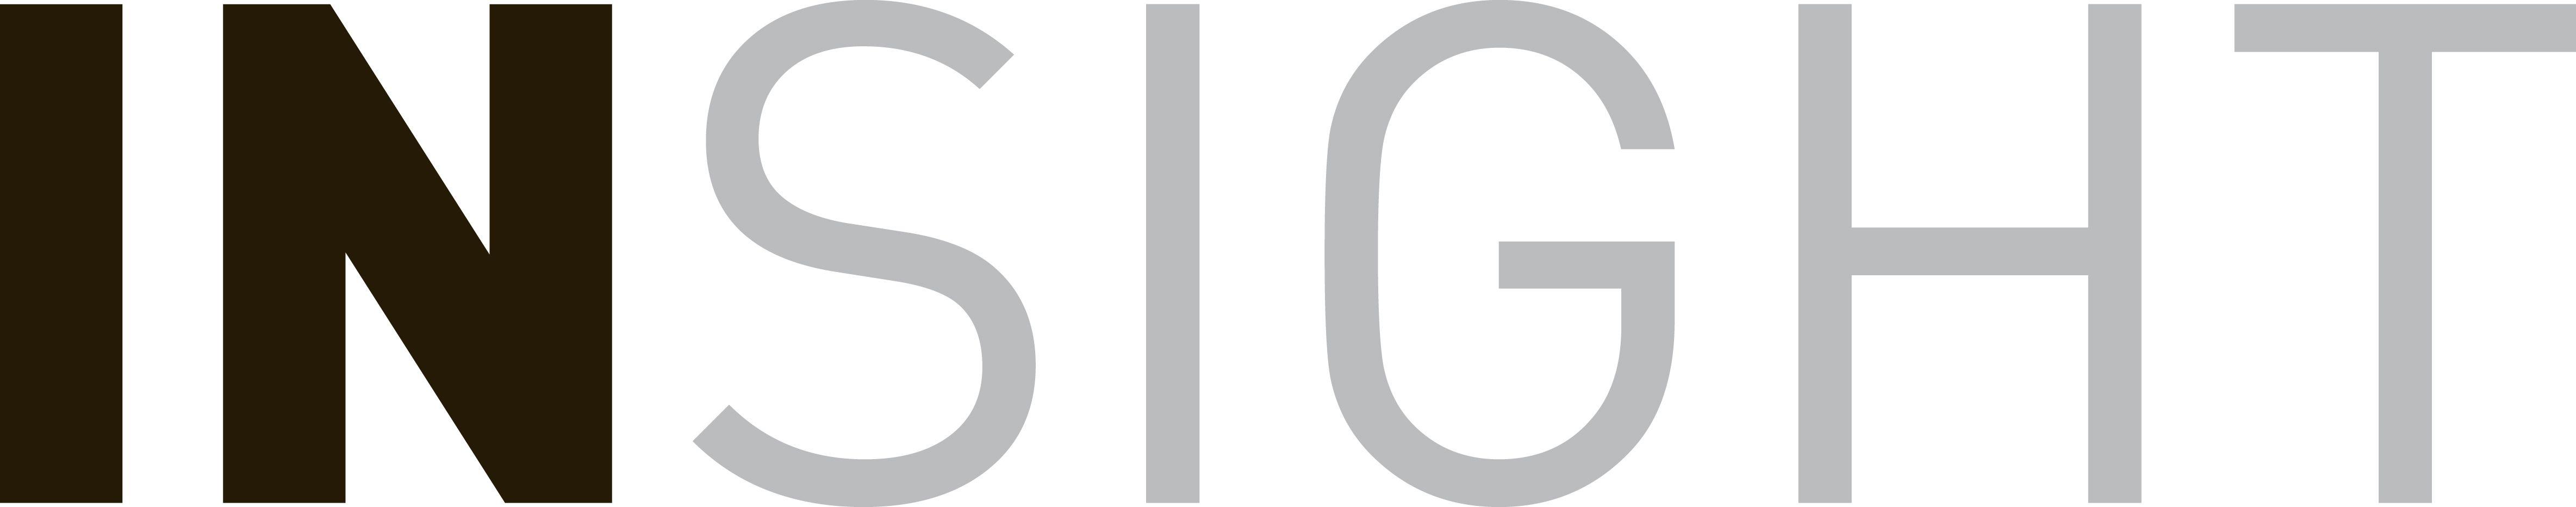 Insight Logo - Insight Logos